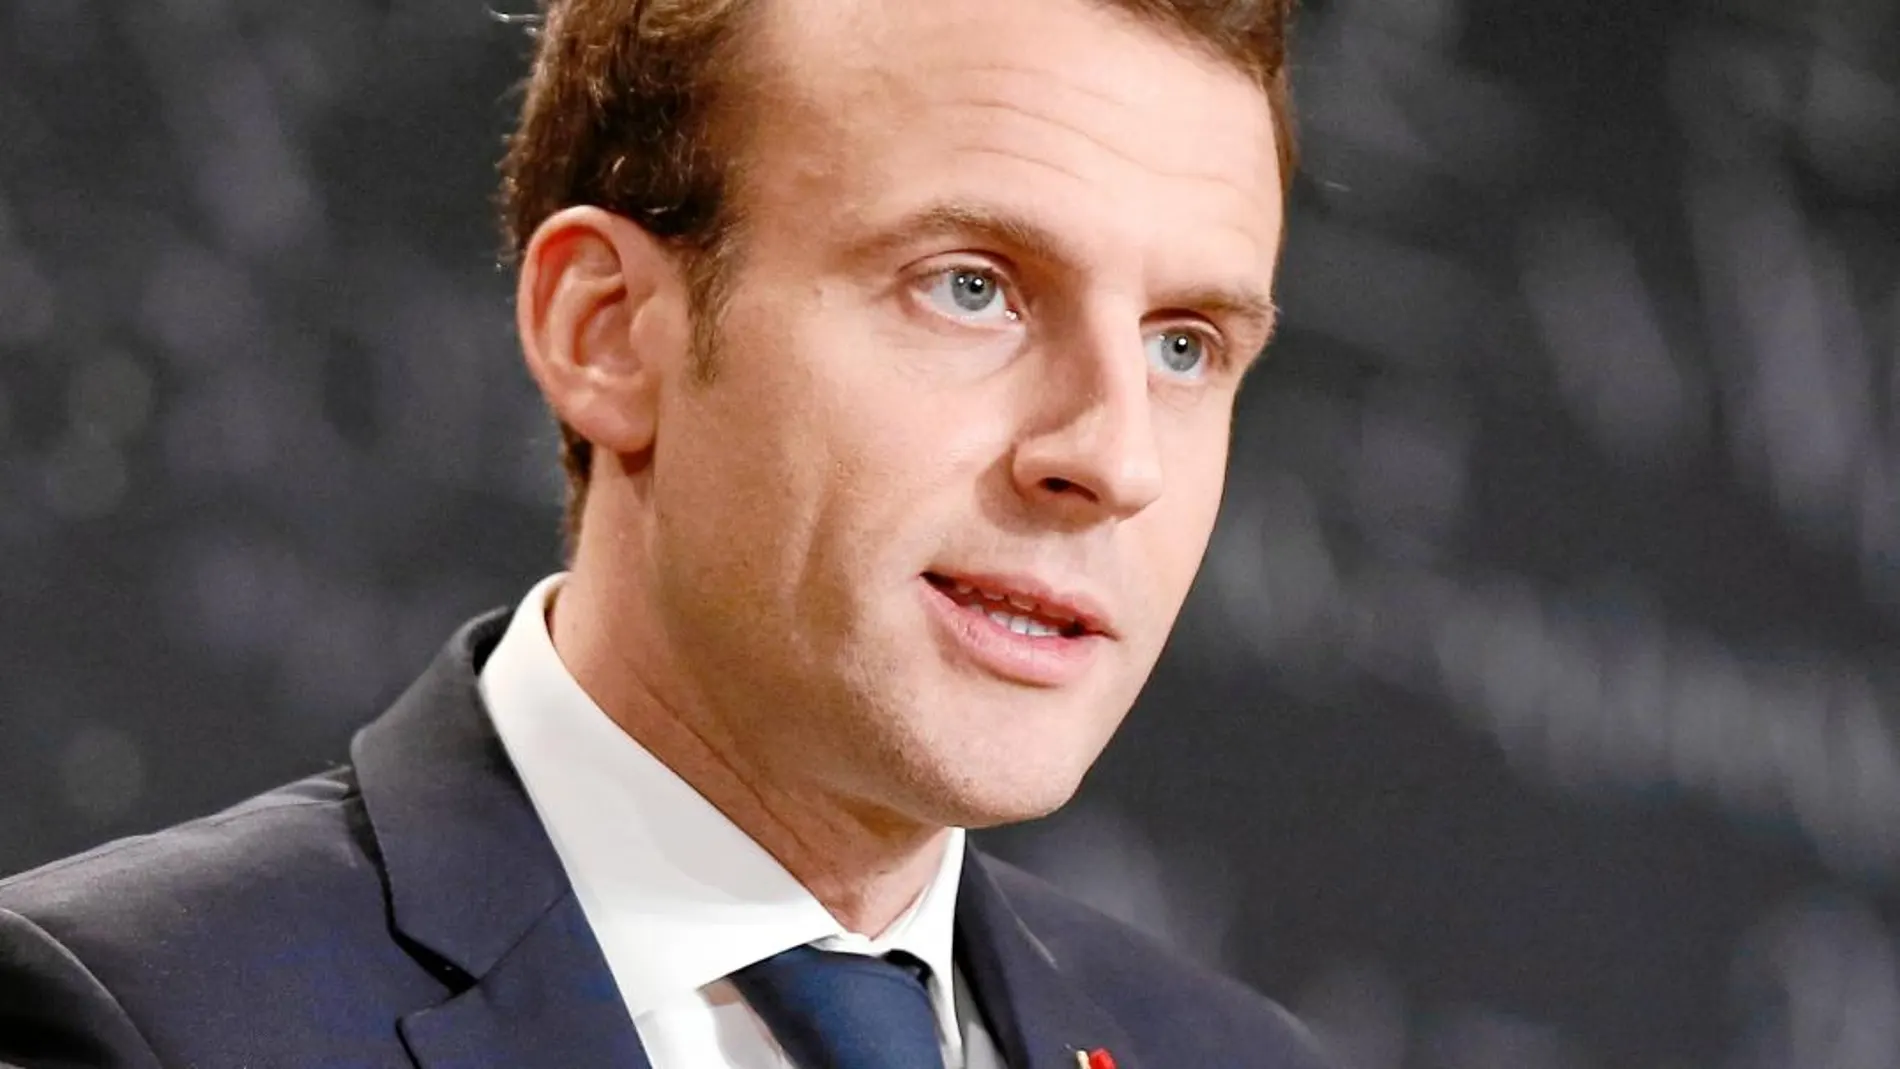 El presidente Emmanuel Macron se ha quejado en público de la alergia a los cambios de sus compatriotas